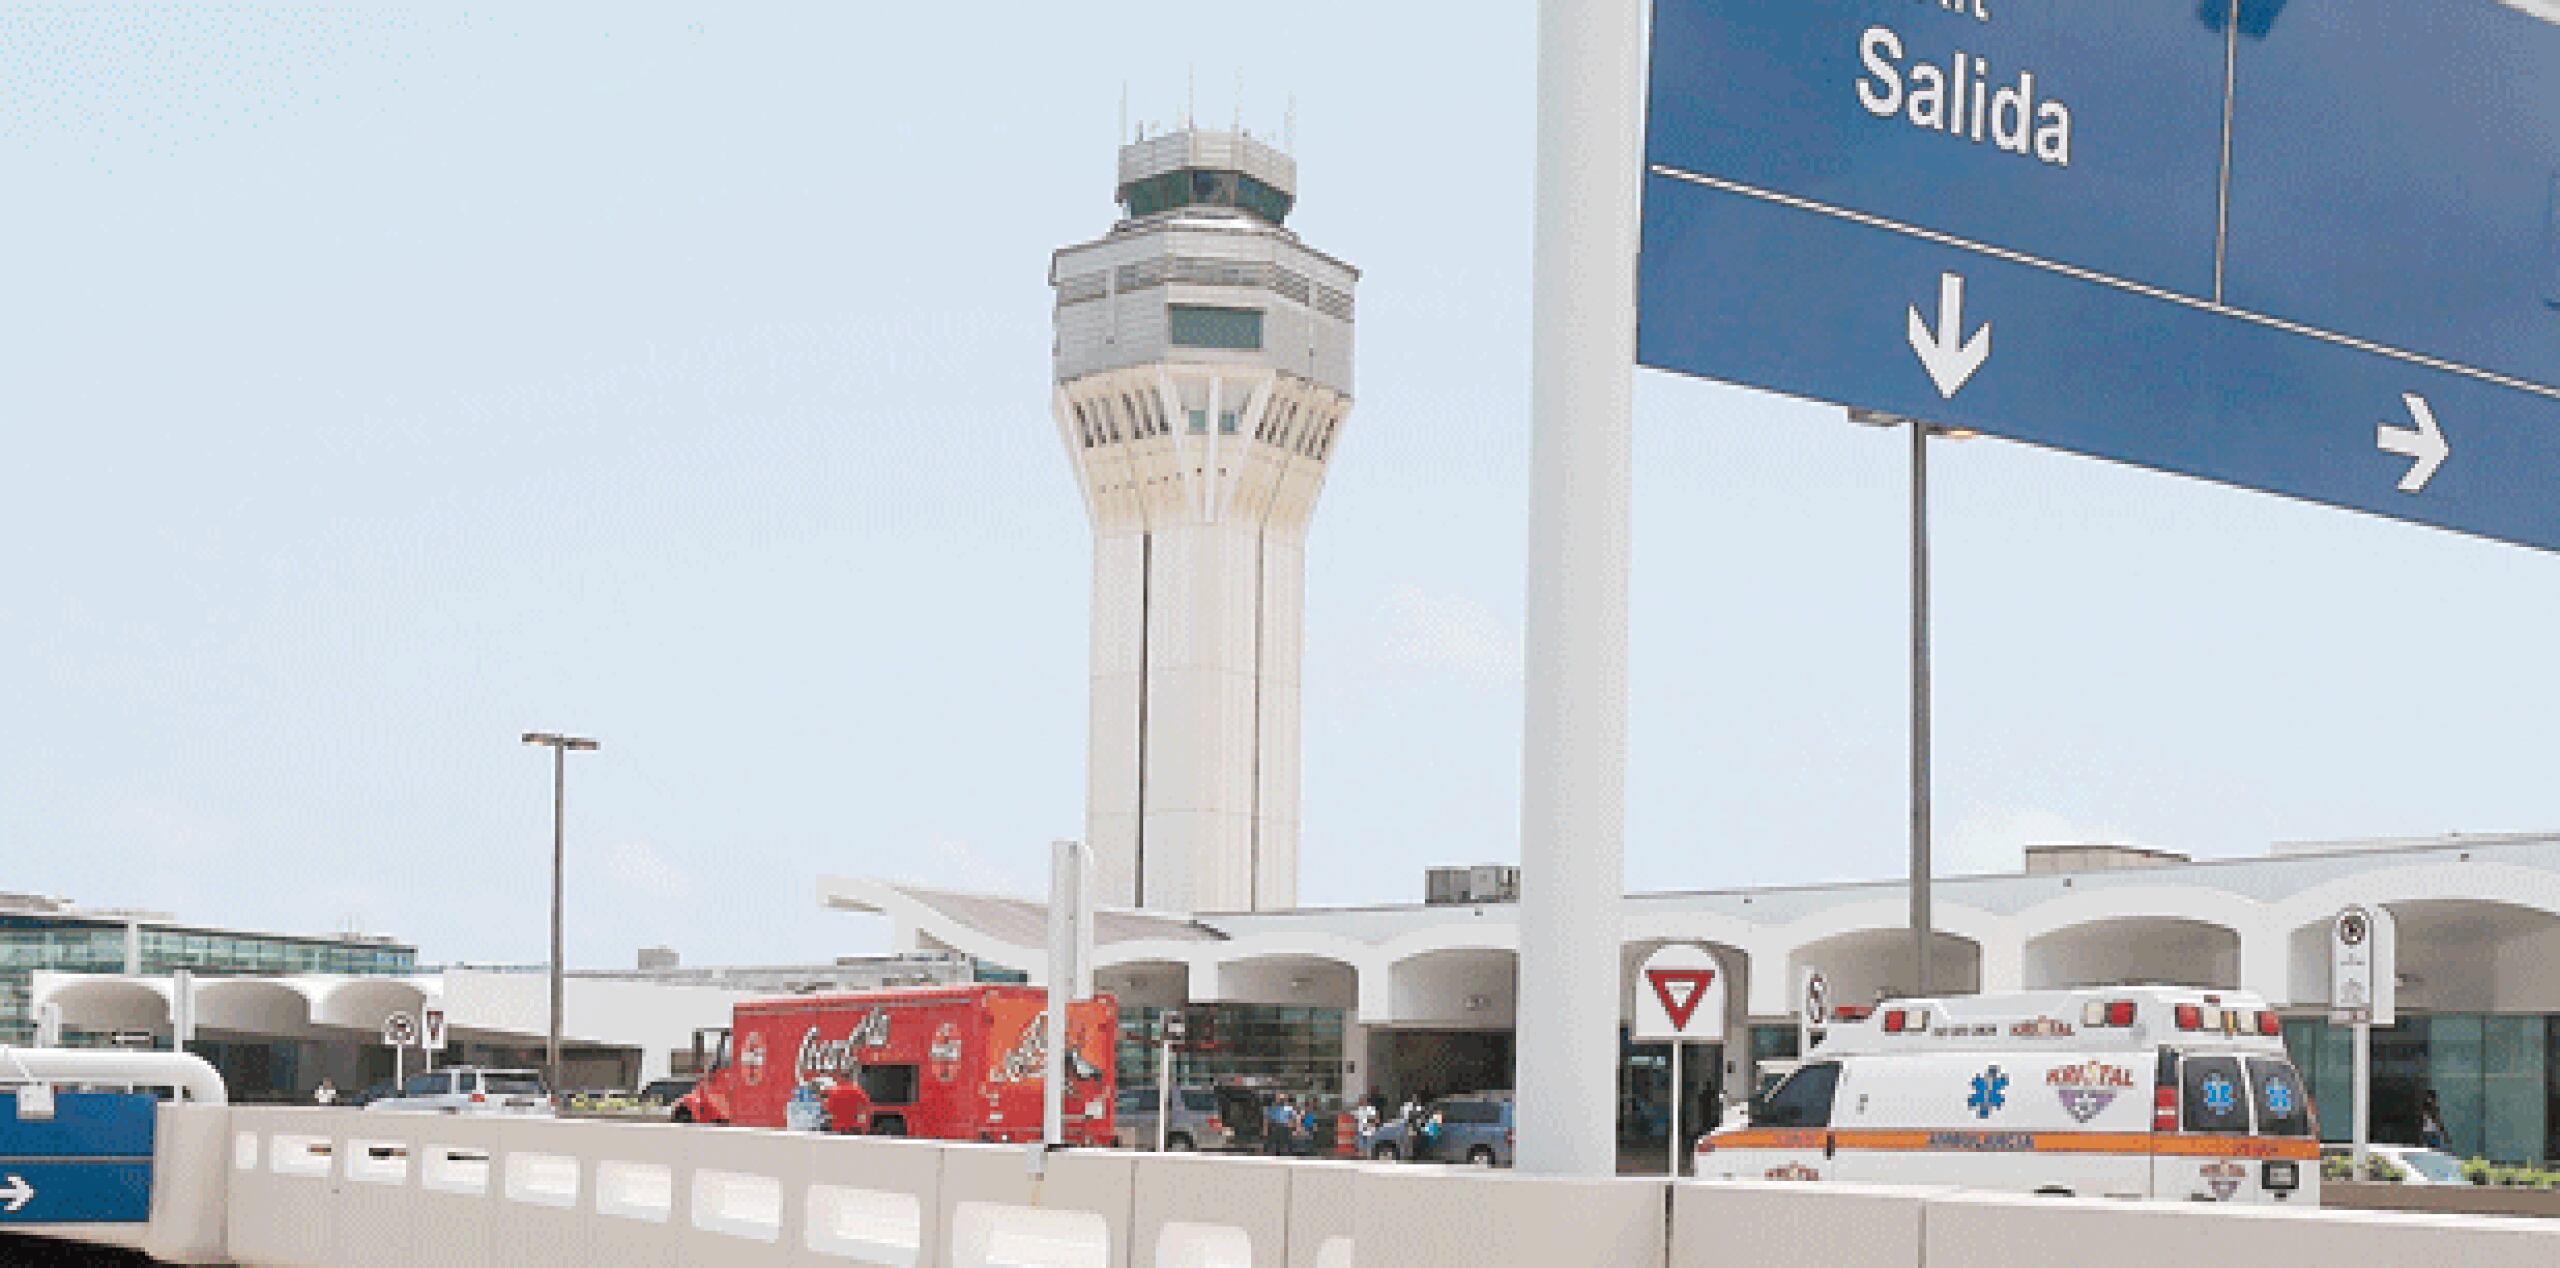 Las declaraciones del empresario surgieron después que la AEE confirmó esta mañana que la compañía operadora del Aeropuerto Internacional Luis Muñoz Marín tiene una deuda de $25 millones por servicio de electricidad  (Archivo)